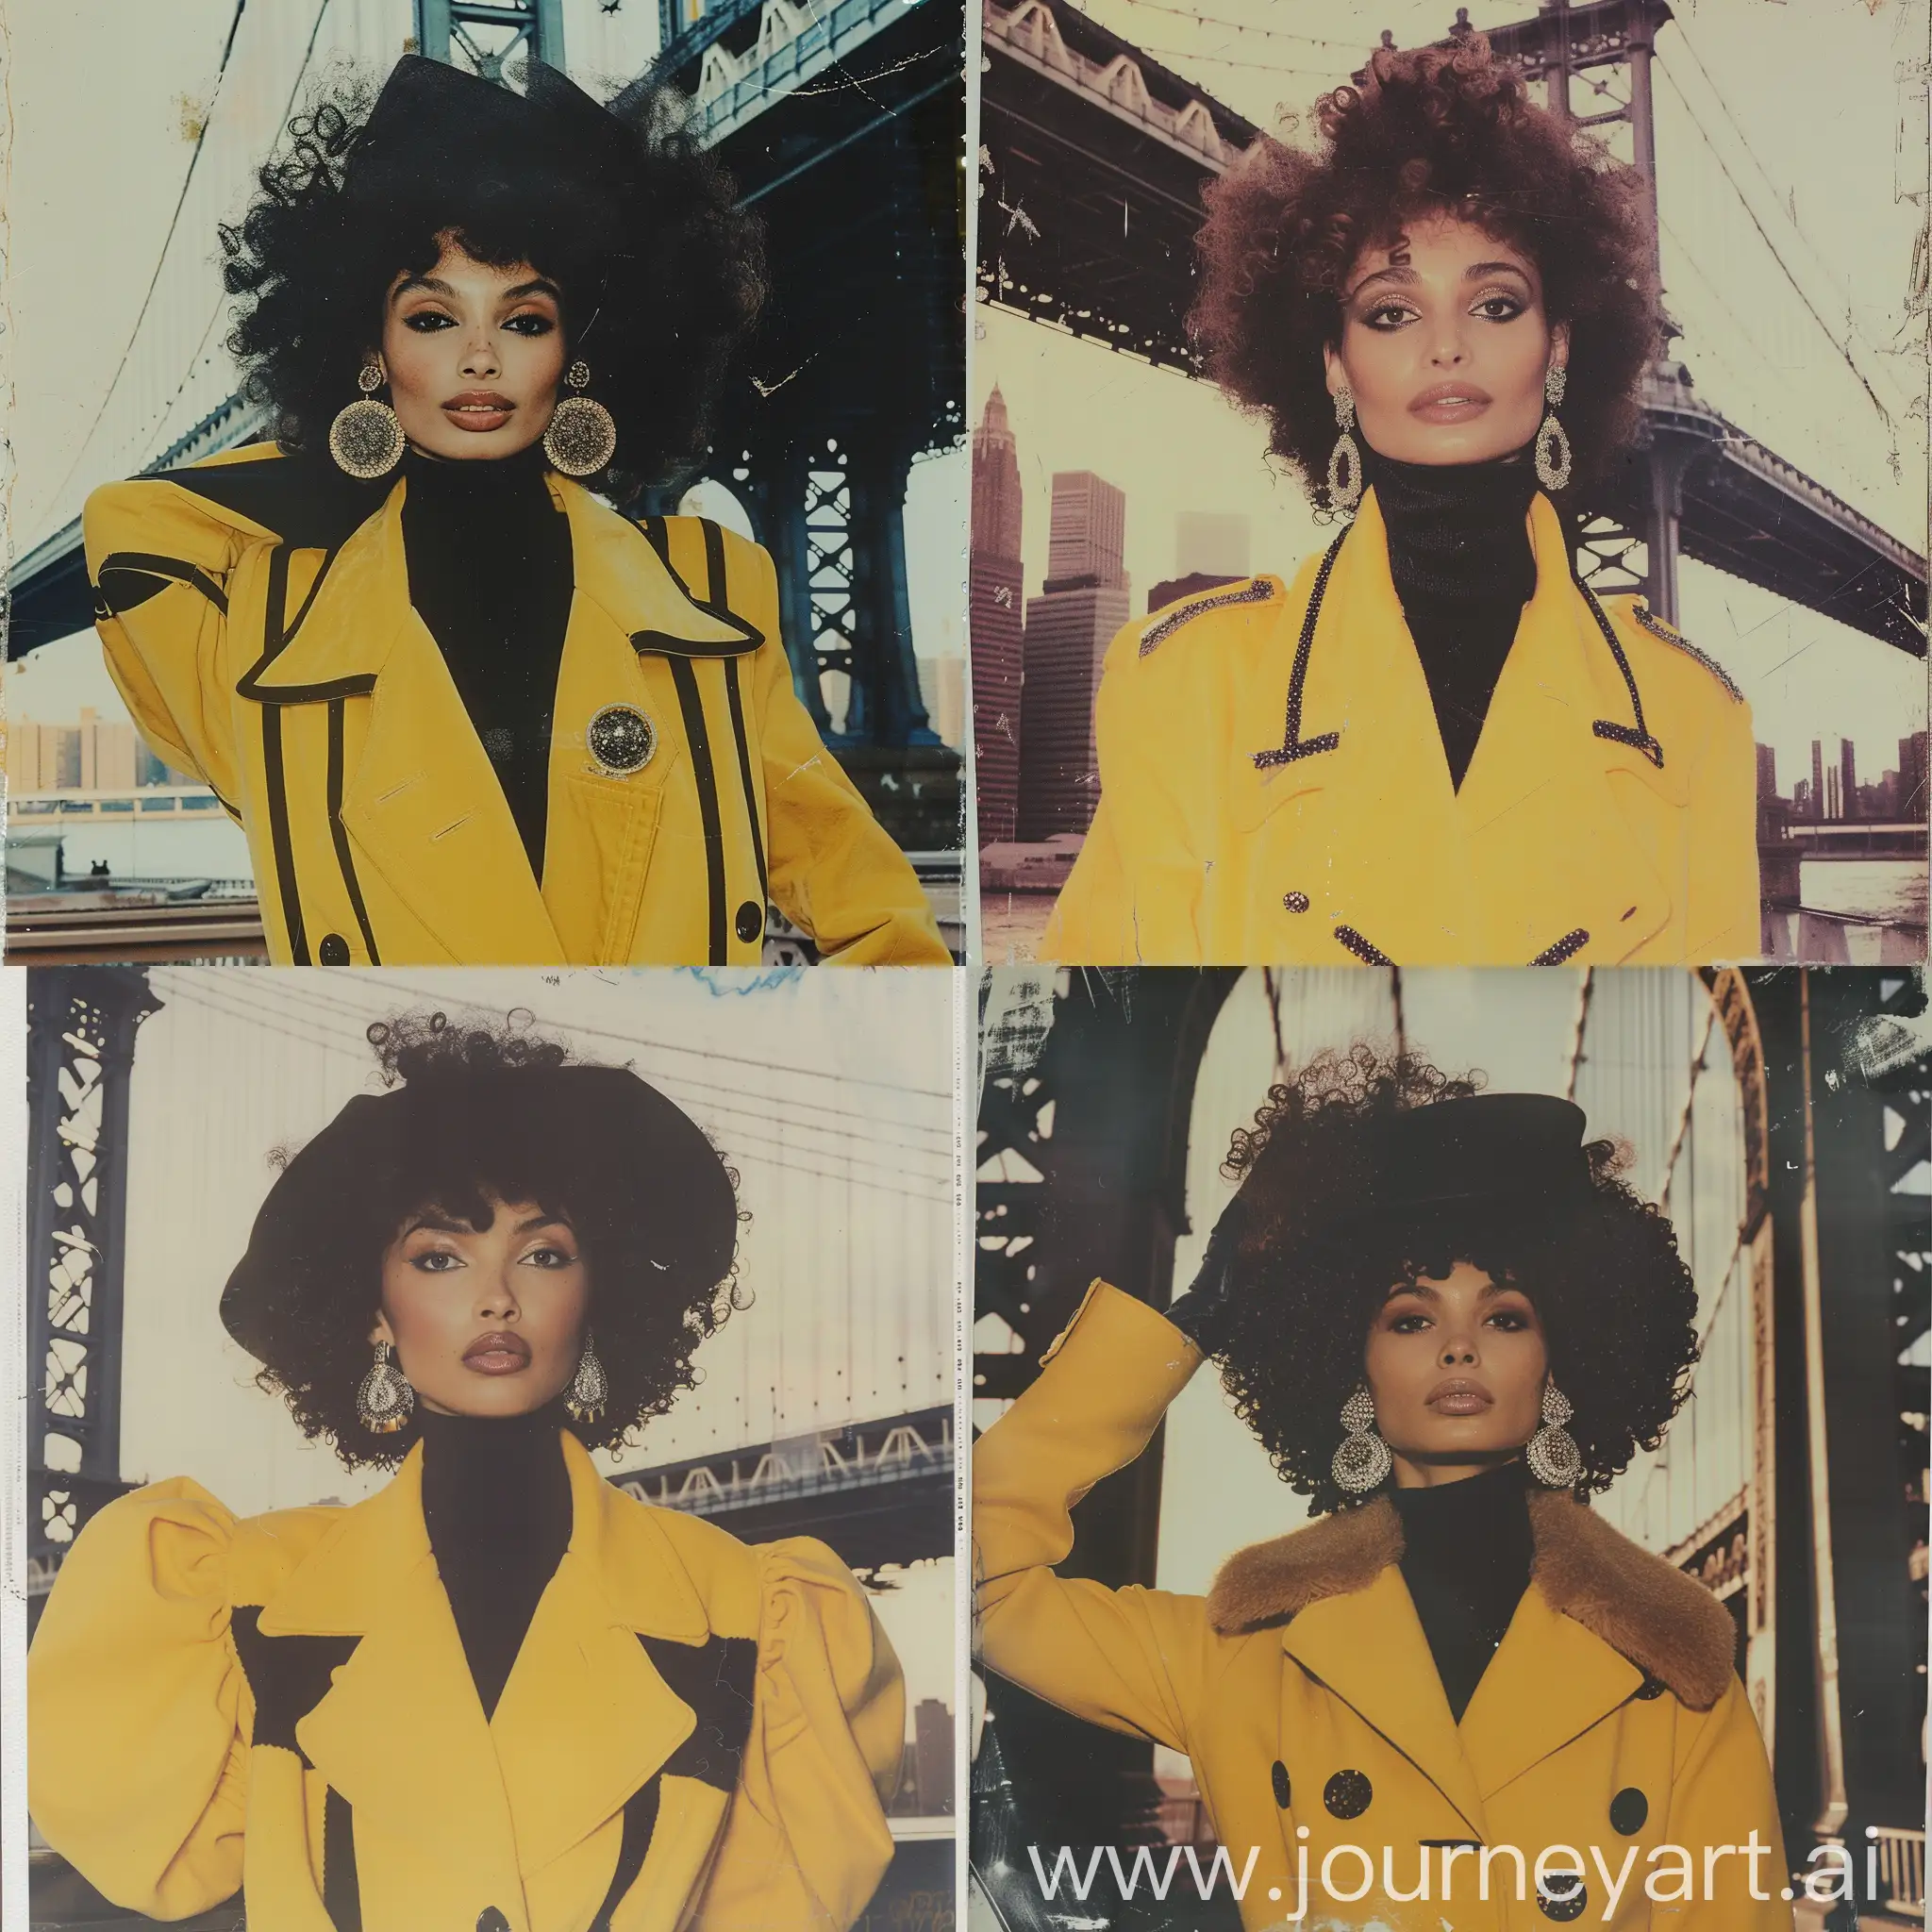 1980 Elle fashion, New York bridge, fashion model, кудрявые объемные волосы, химическая завивка 80-х, укладка 1980, реалистичная поза, желтое пальто с широкими плечами, черная водолазка, крупные серьги с камнями, кепи,
Dolce &Gabbana iconic, высокая мода, фешн, кутюр, the effect of old film with faded paints, фотосессия от alessio albi, снимок на Polaroid